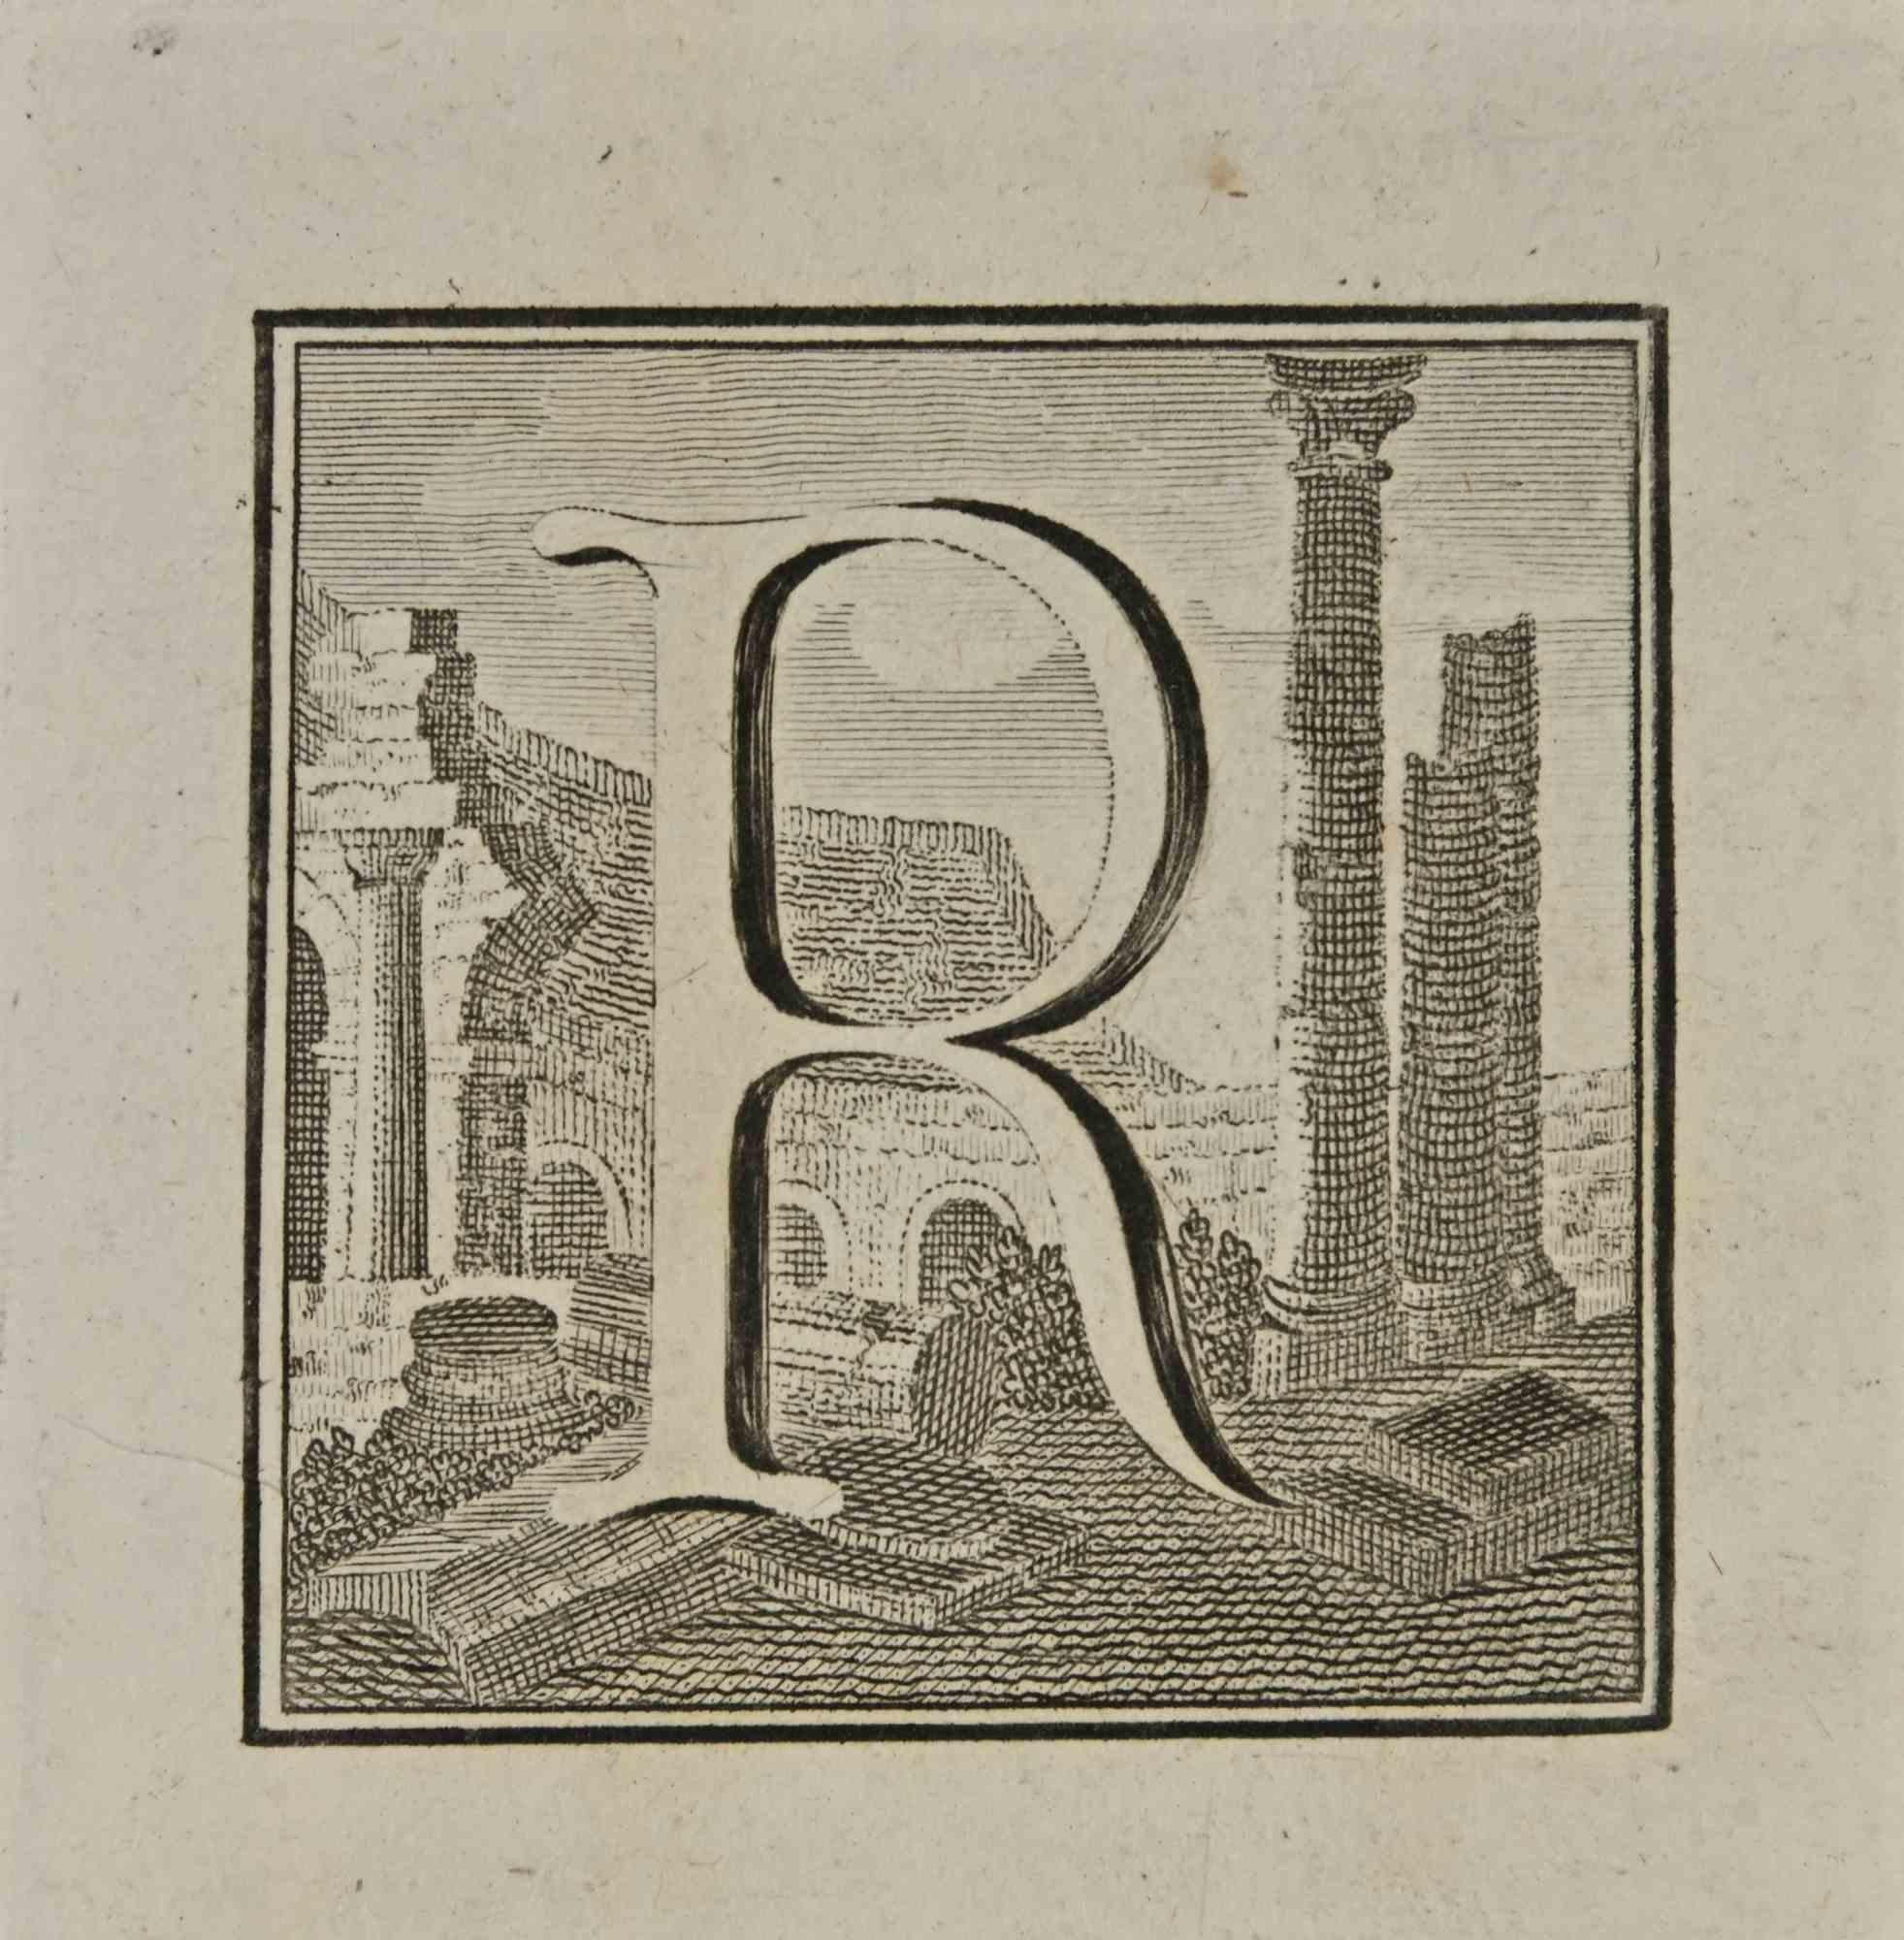 Lettre de l'Alphabet R de la série "Antiquités d'Herculanum", est une gravure sur papier réalisée par Luigi Vanvitelli au 18ème siècle.

Bon état avec quelques rousseurs.

La gravure appartient à la suite d'estampes "Antiquités d'Herculanum